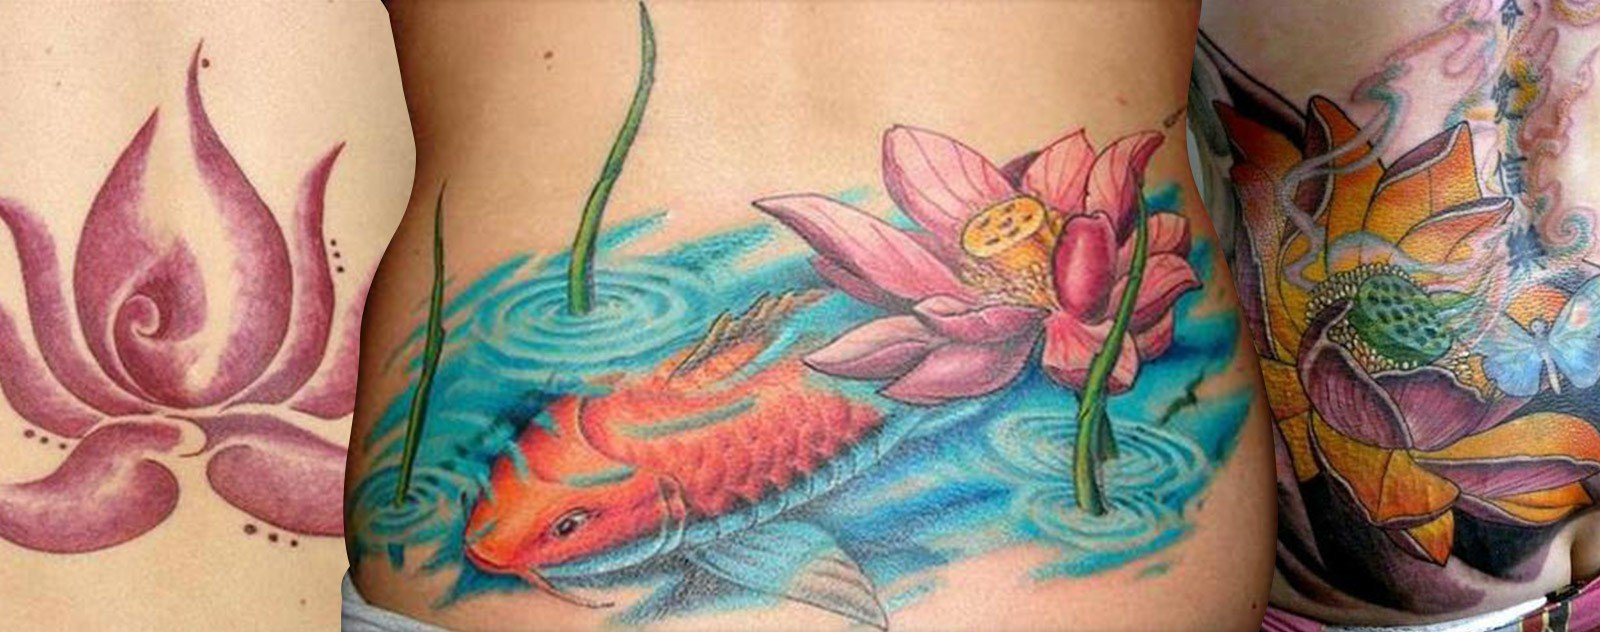 tatouage fleure de lotus discret piercing modèles